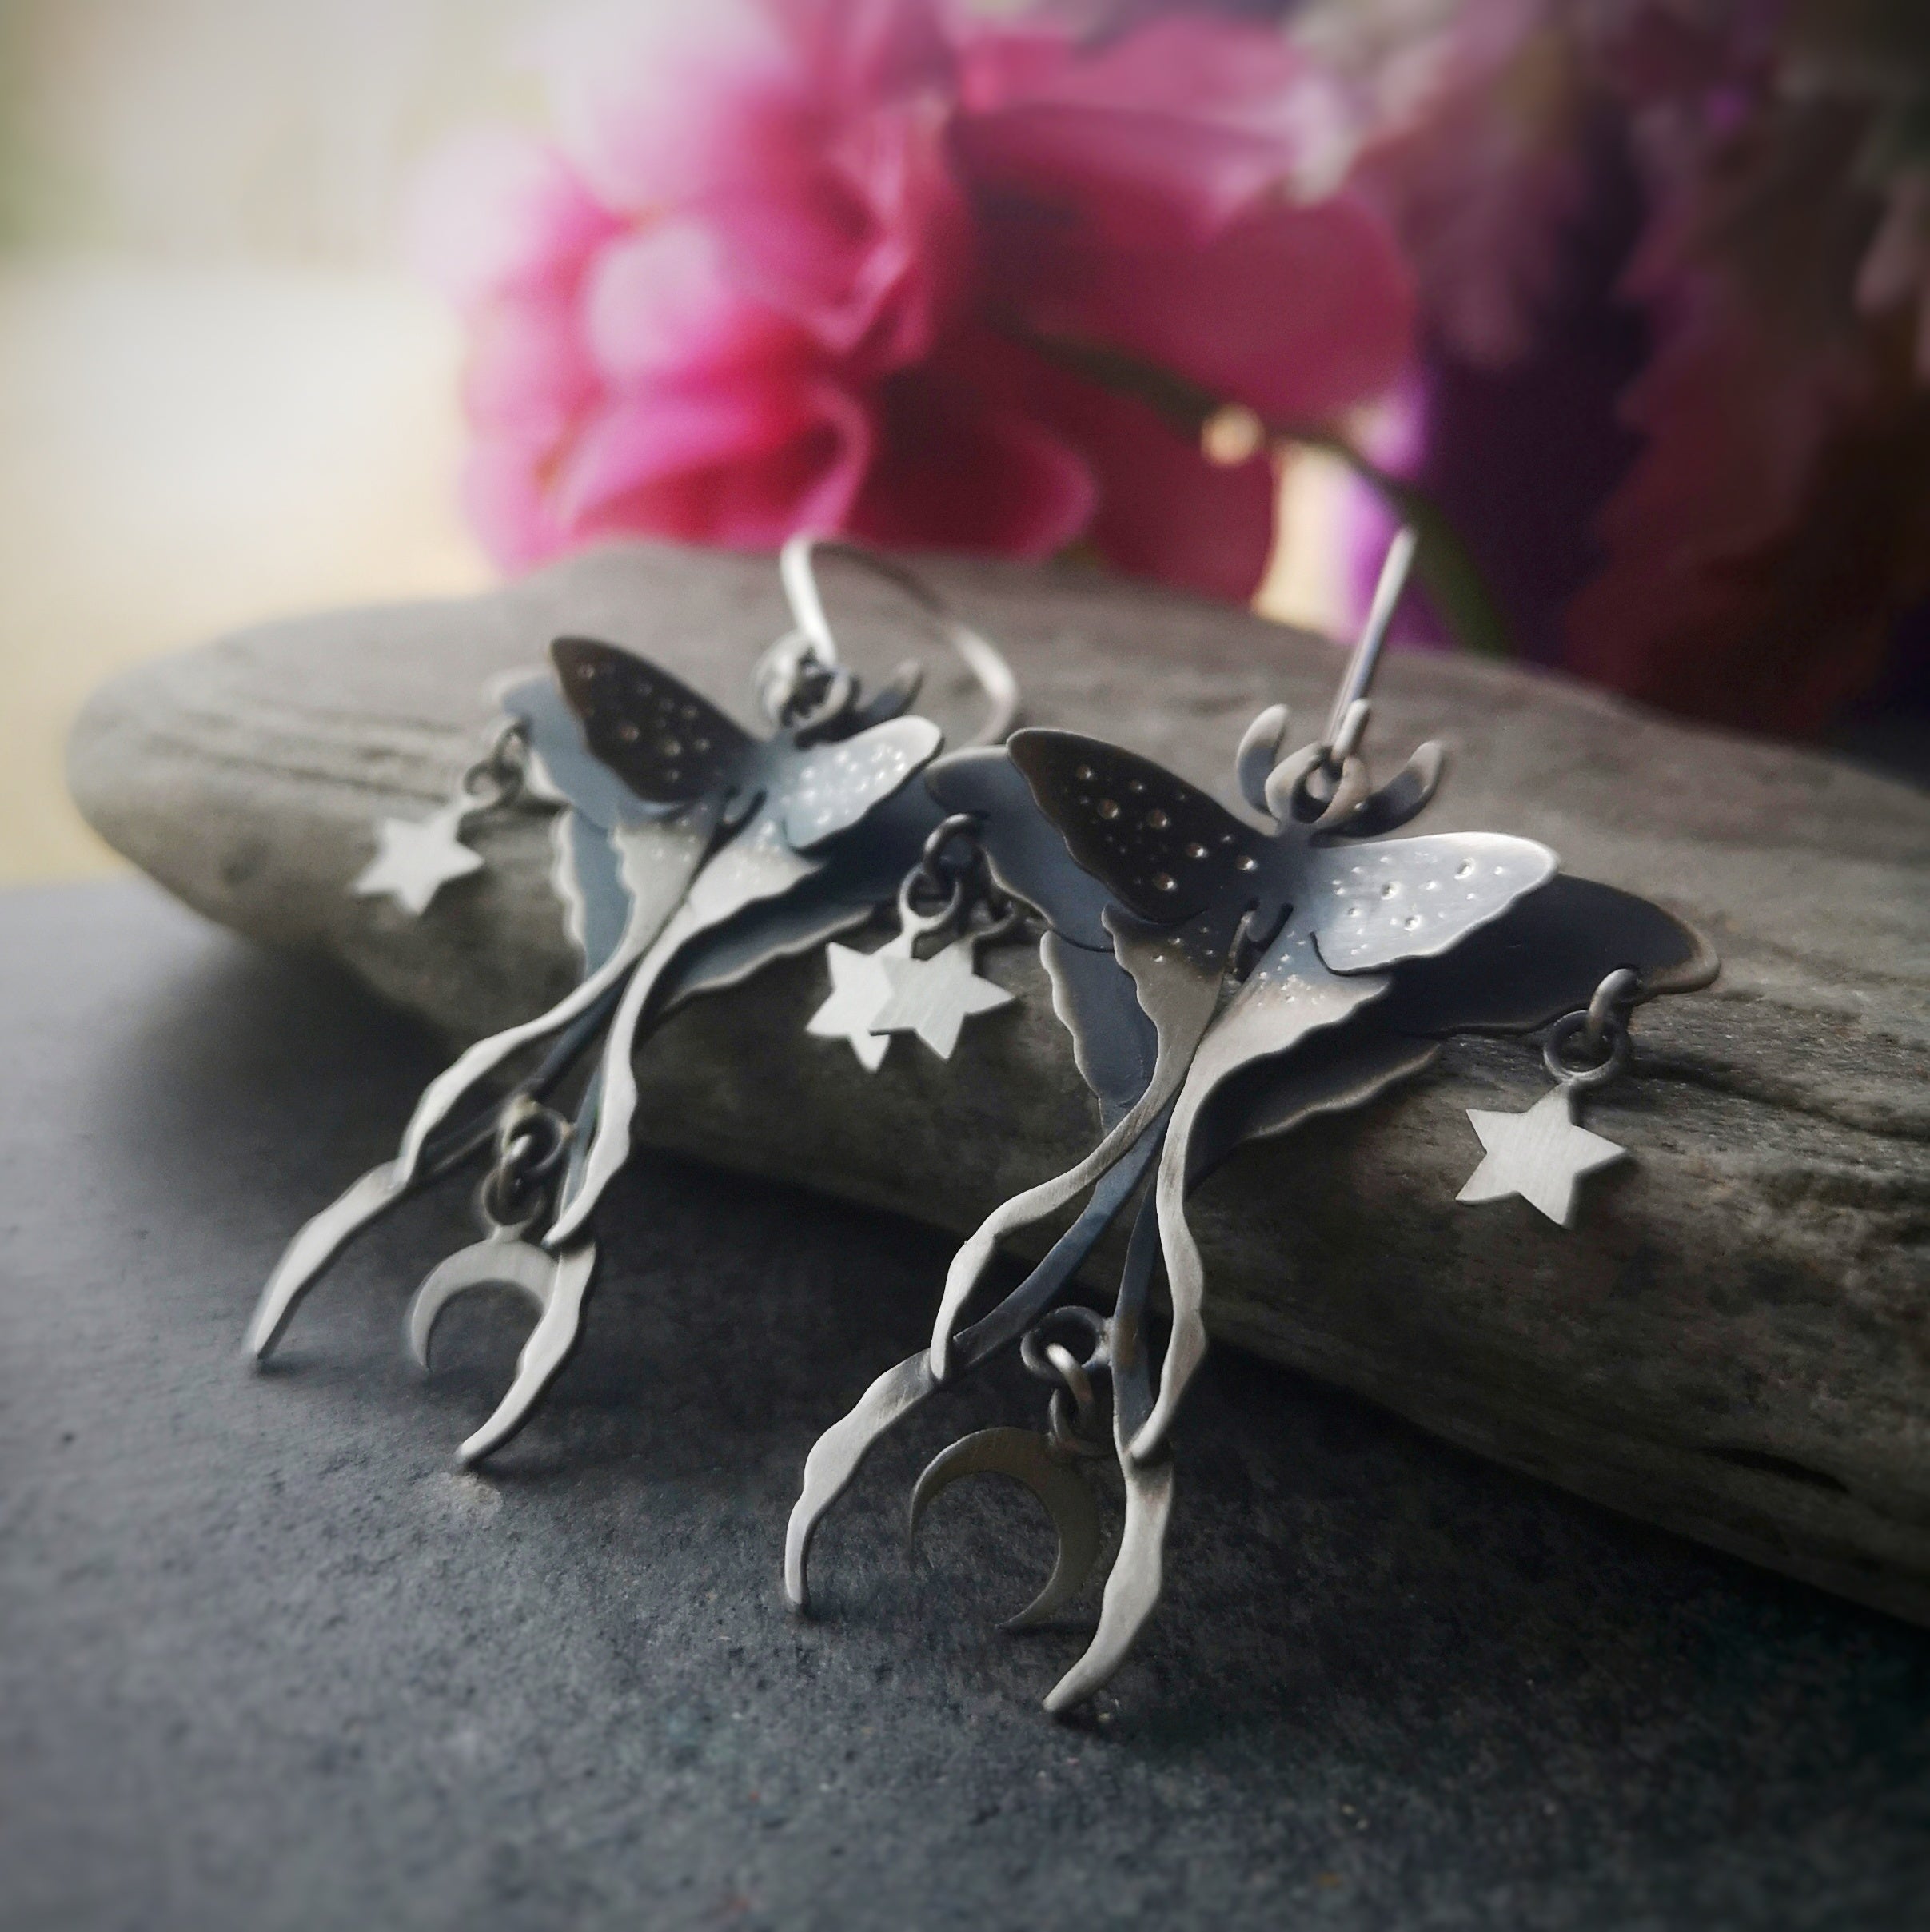 The Luna Moth Chandelier Earrings